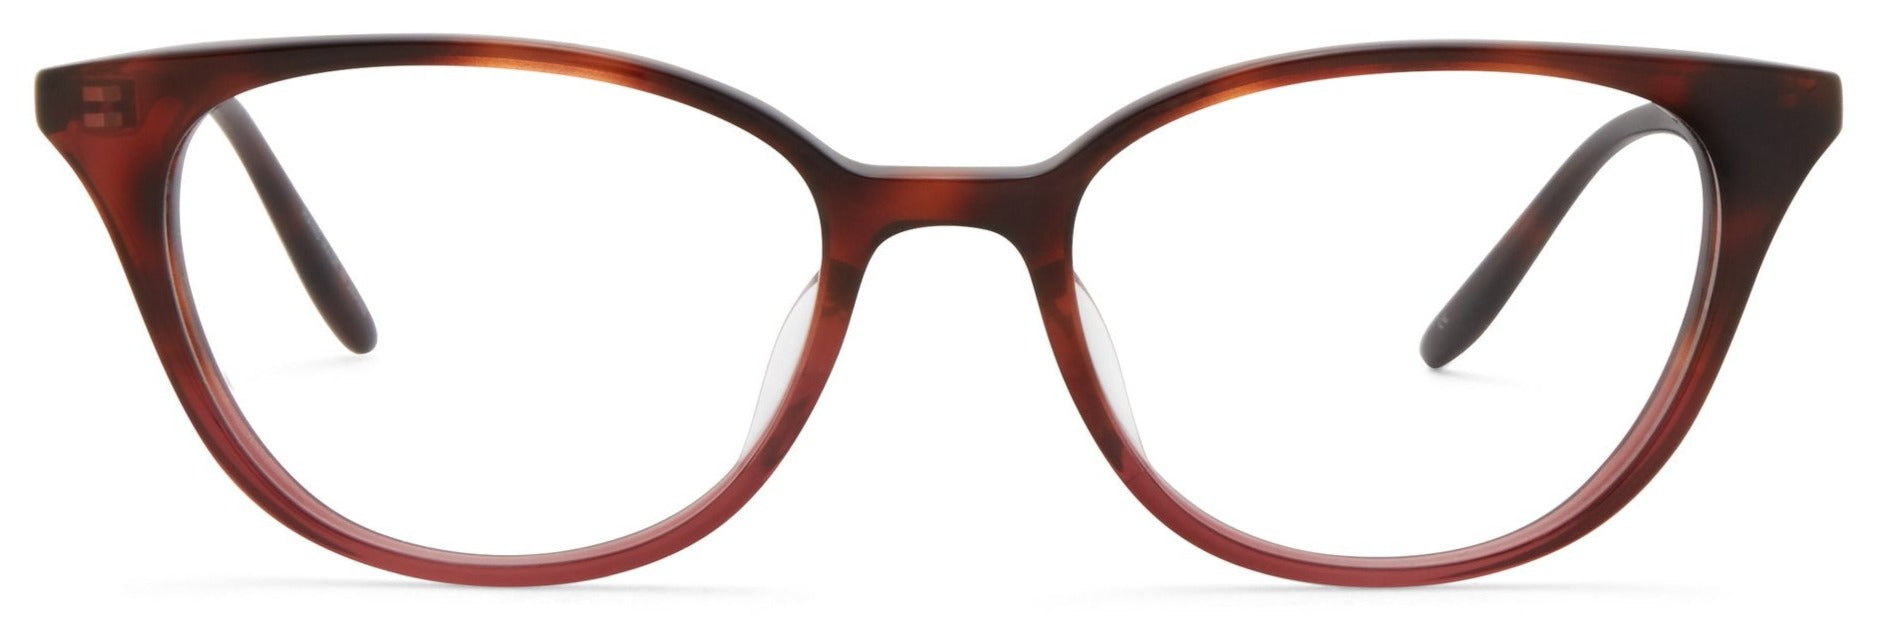 Alexander Daas - Barton Perreira Elise Eyeglasses - Tea Rose Gradient - Front View